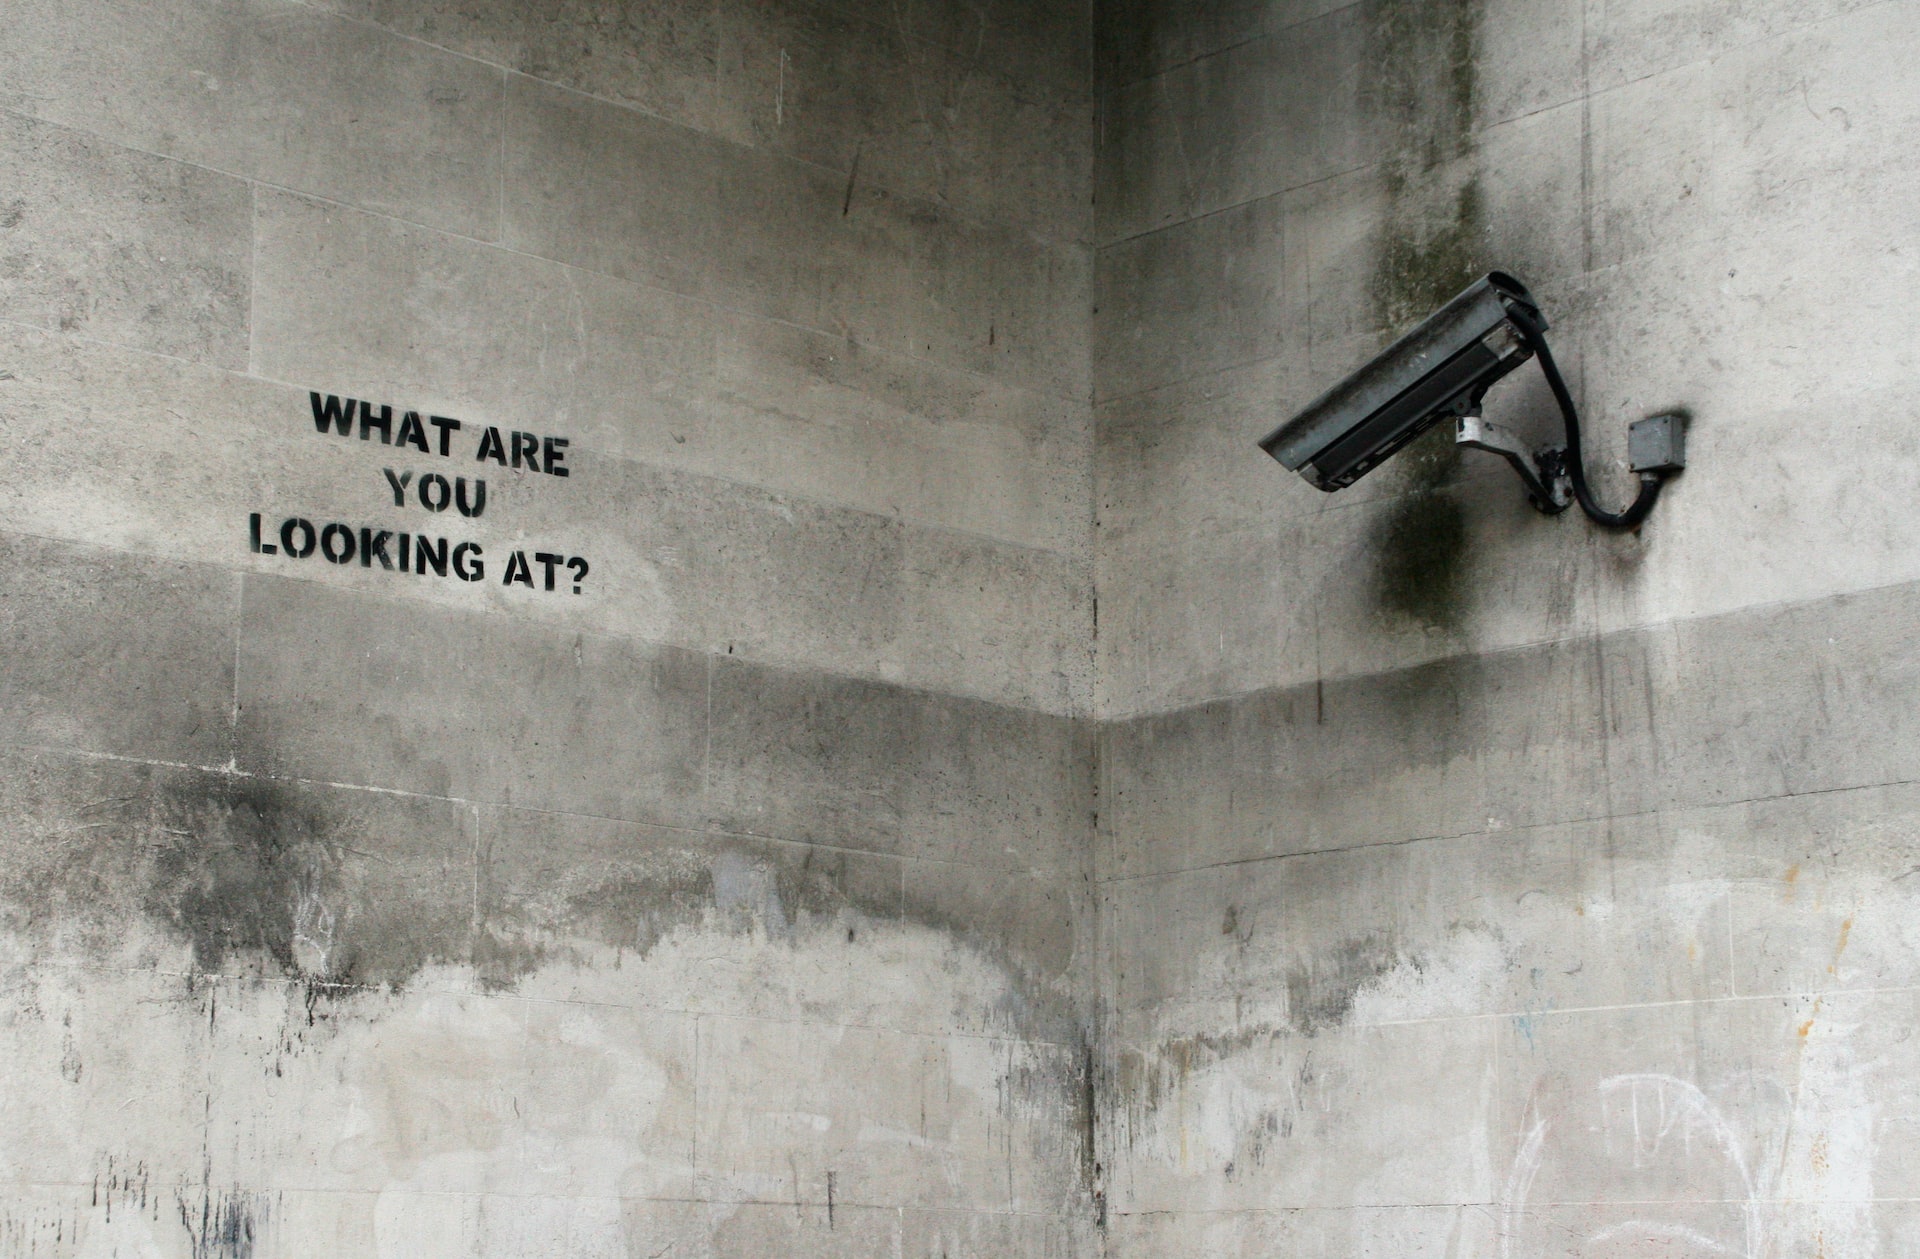 Izložba britanskog uličnog umetnika Banksyja u Poreču 